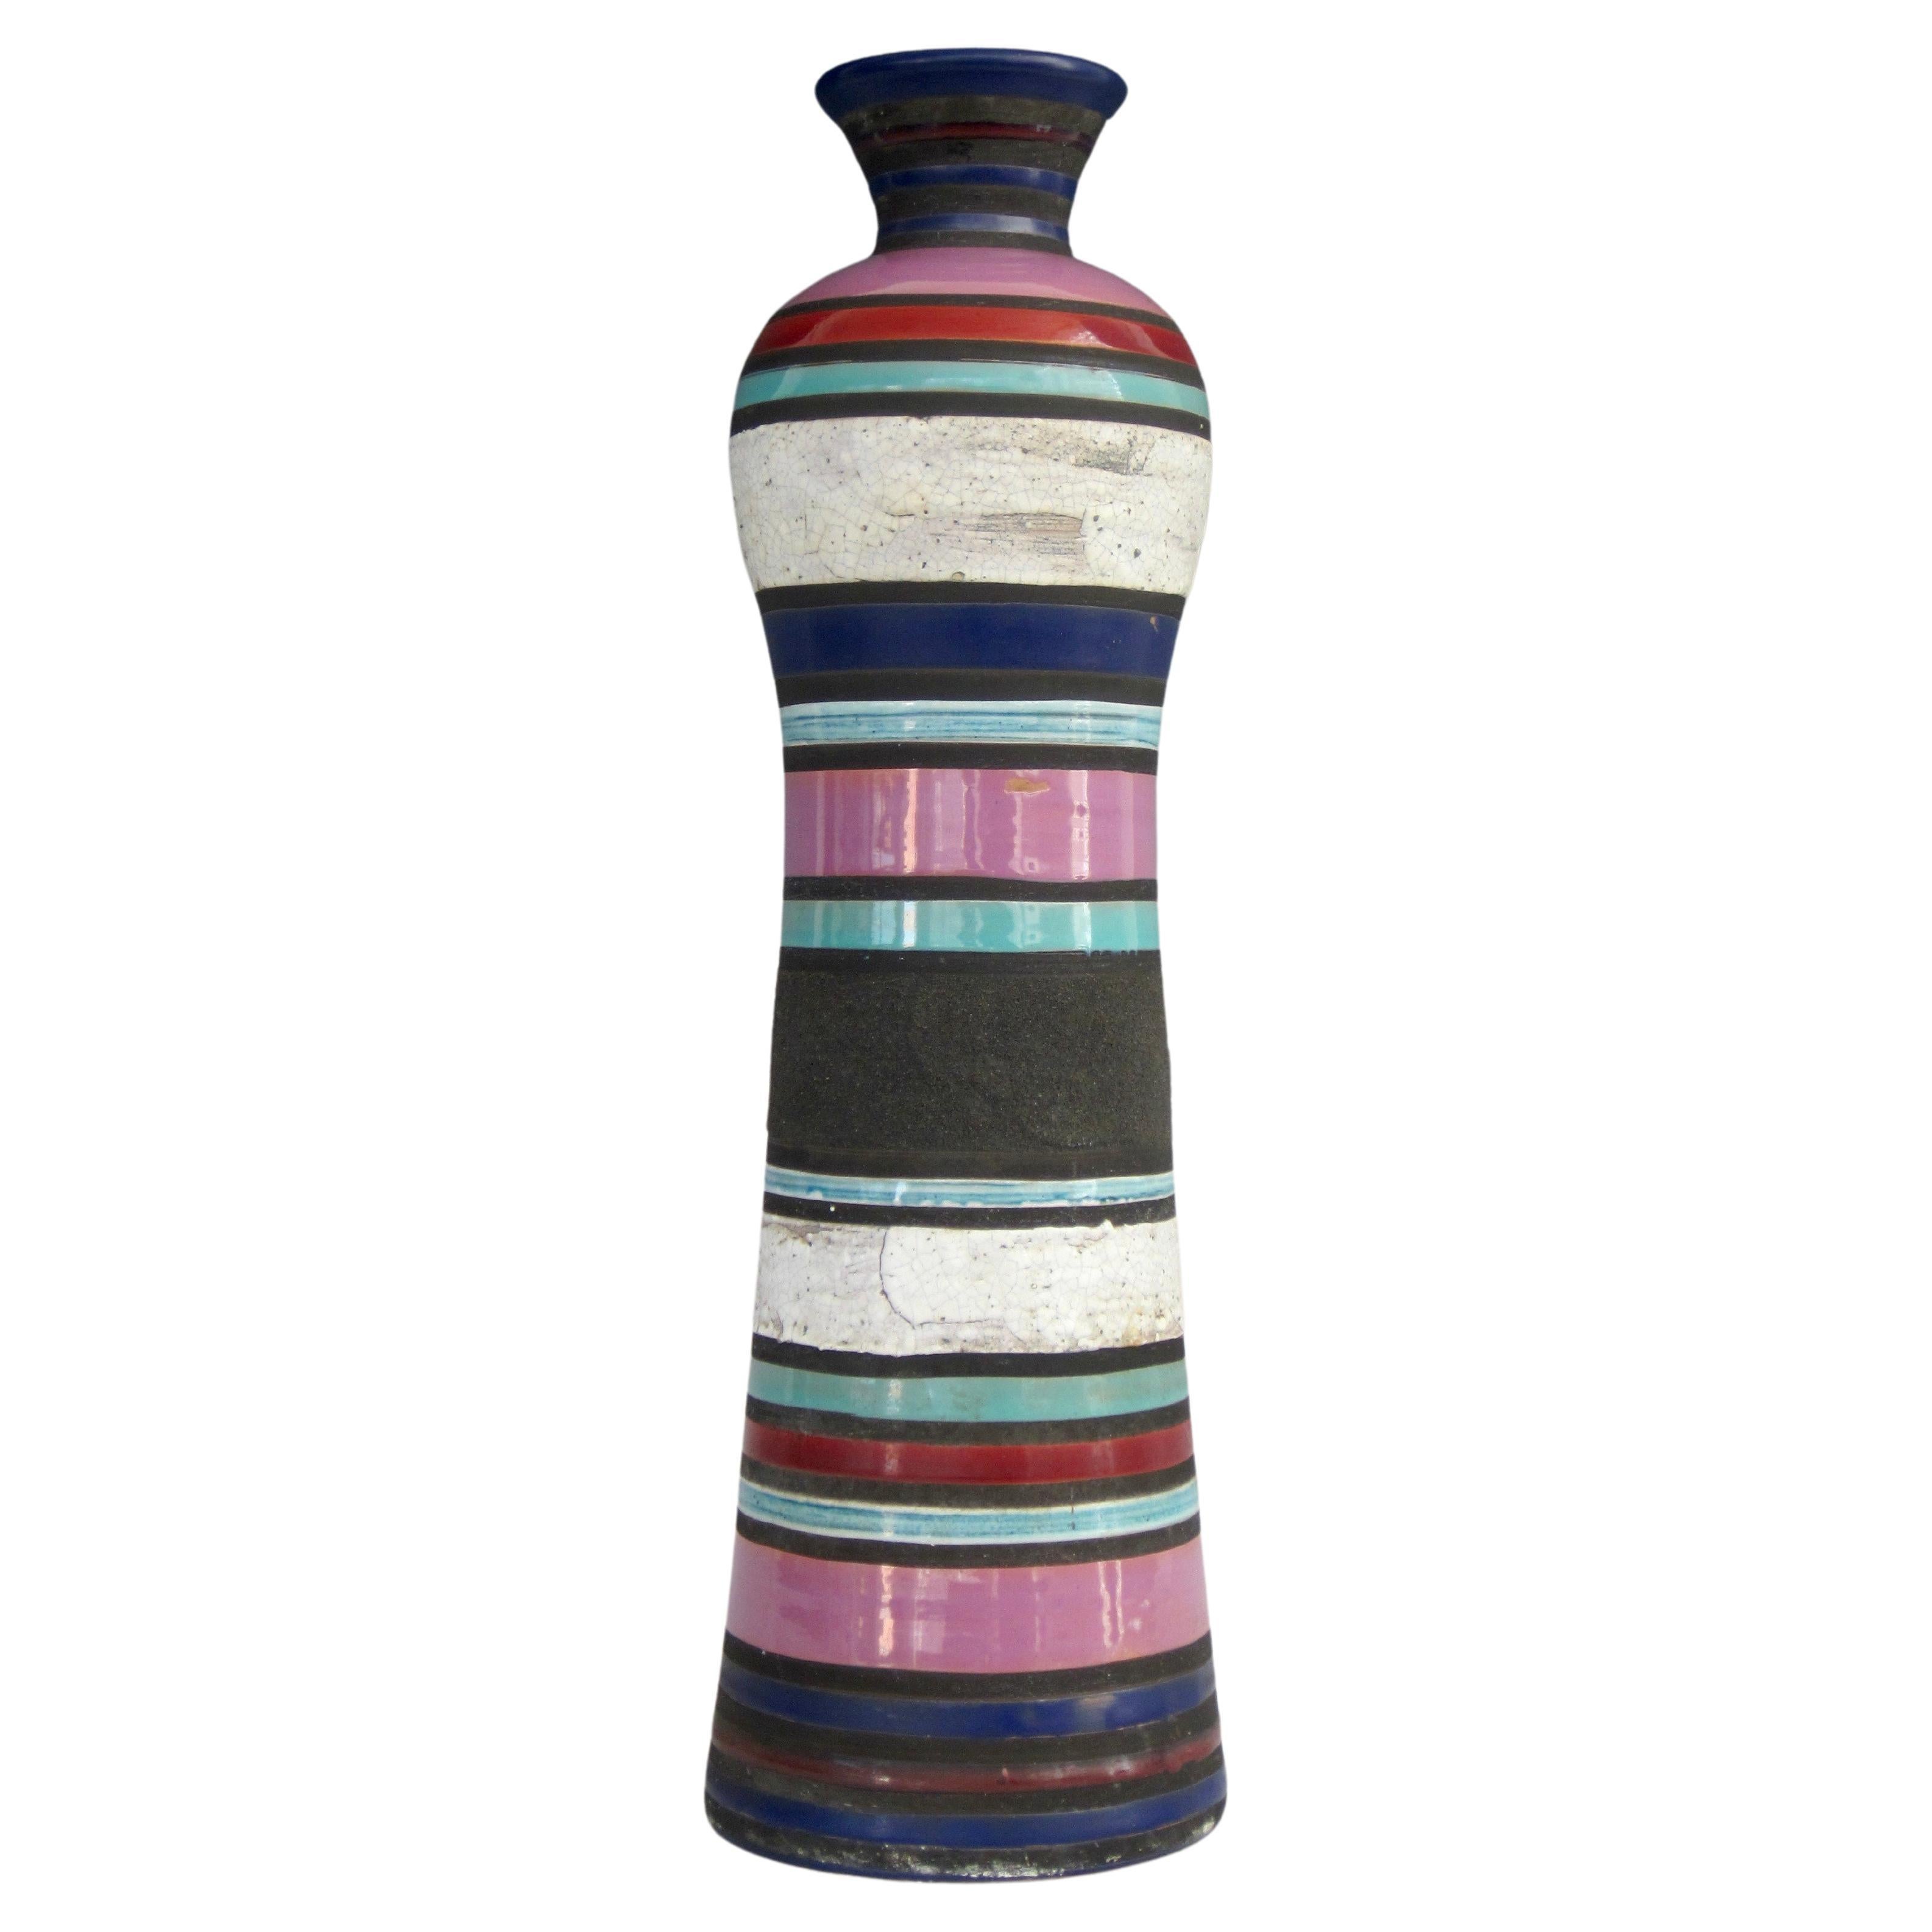 Aldo Londi for Bitossi Cambogia Striped Vase, 1950's For Sale